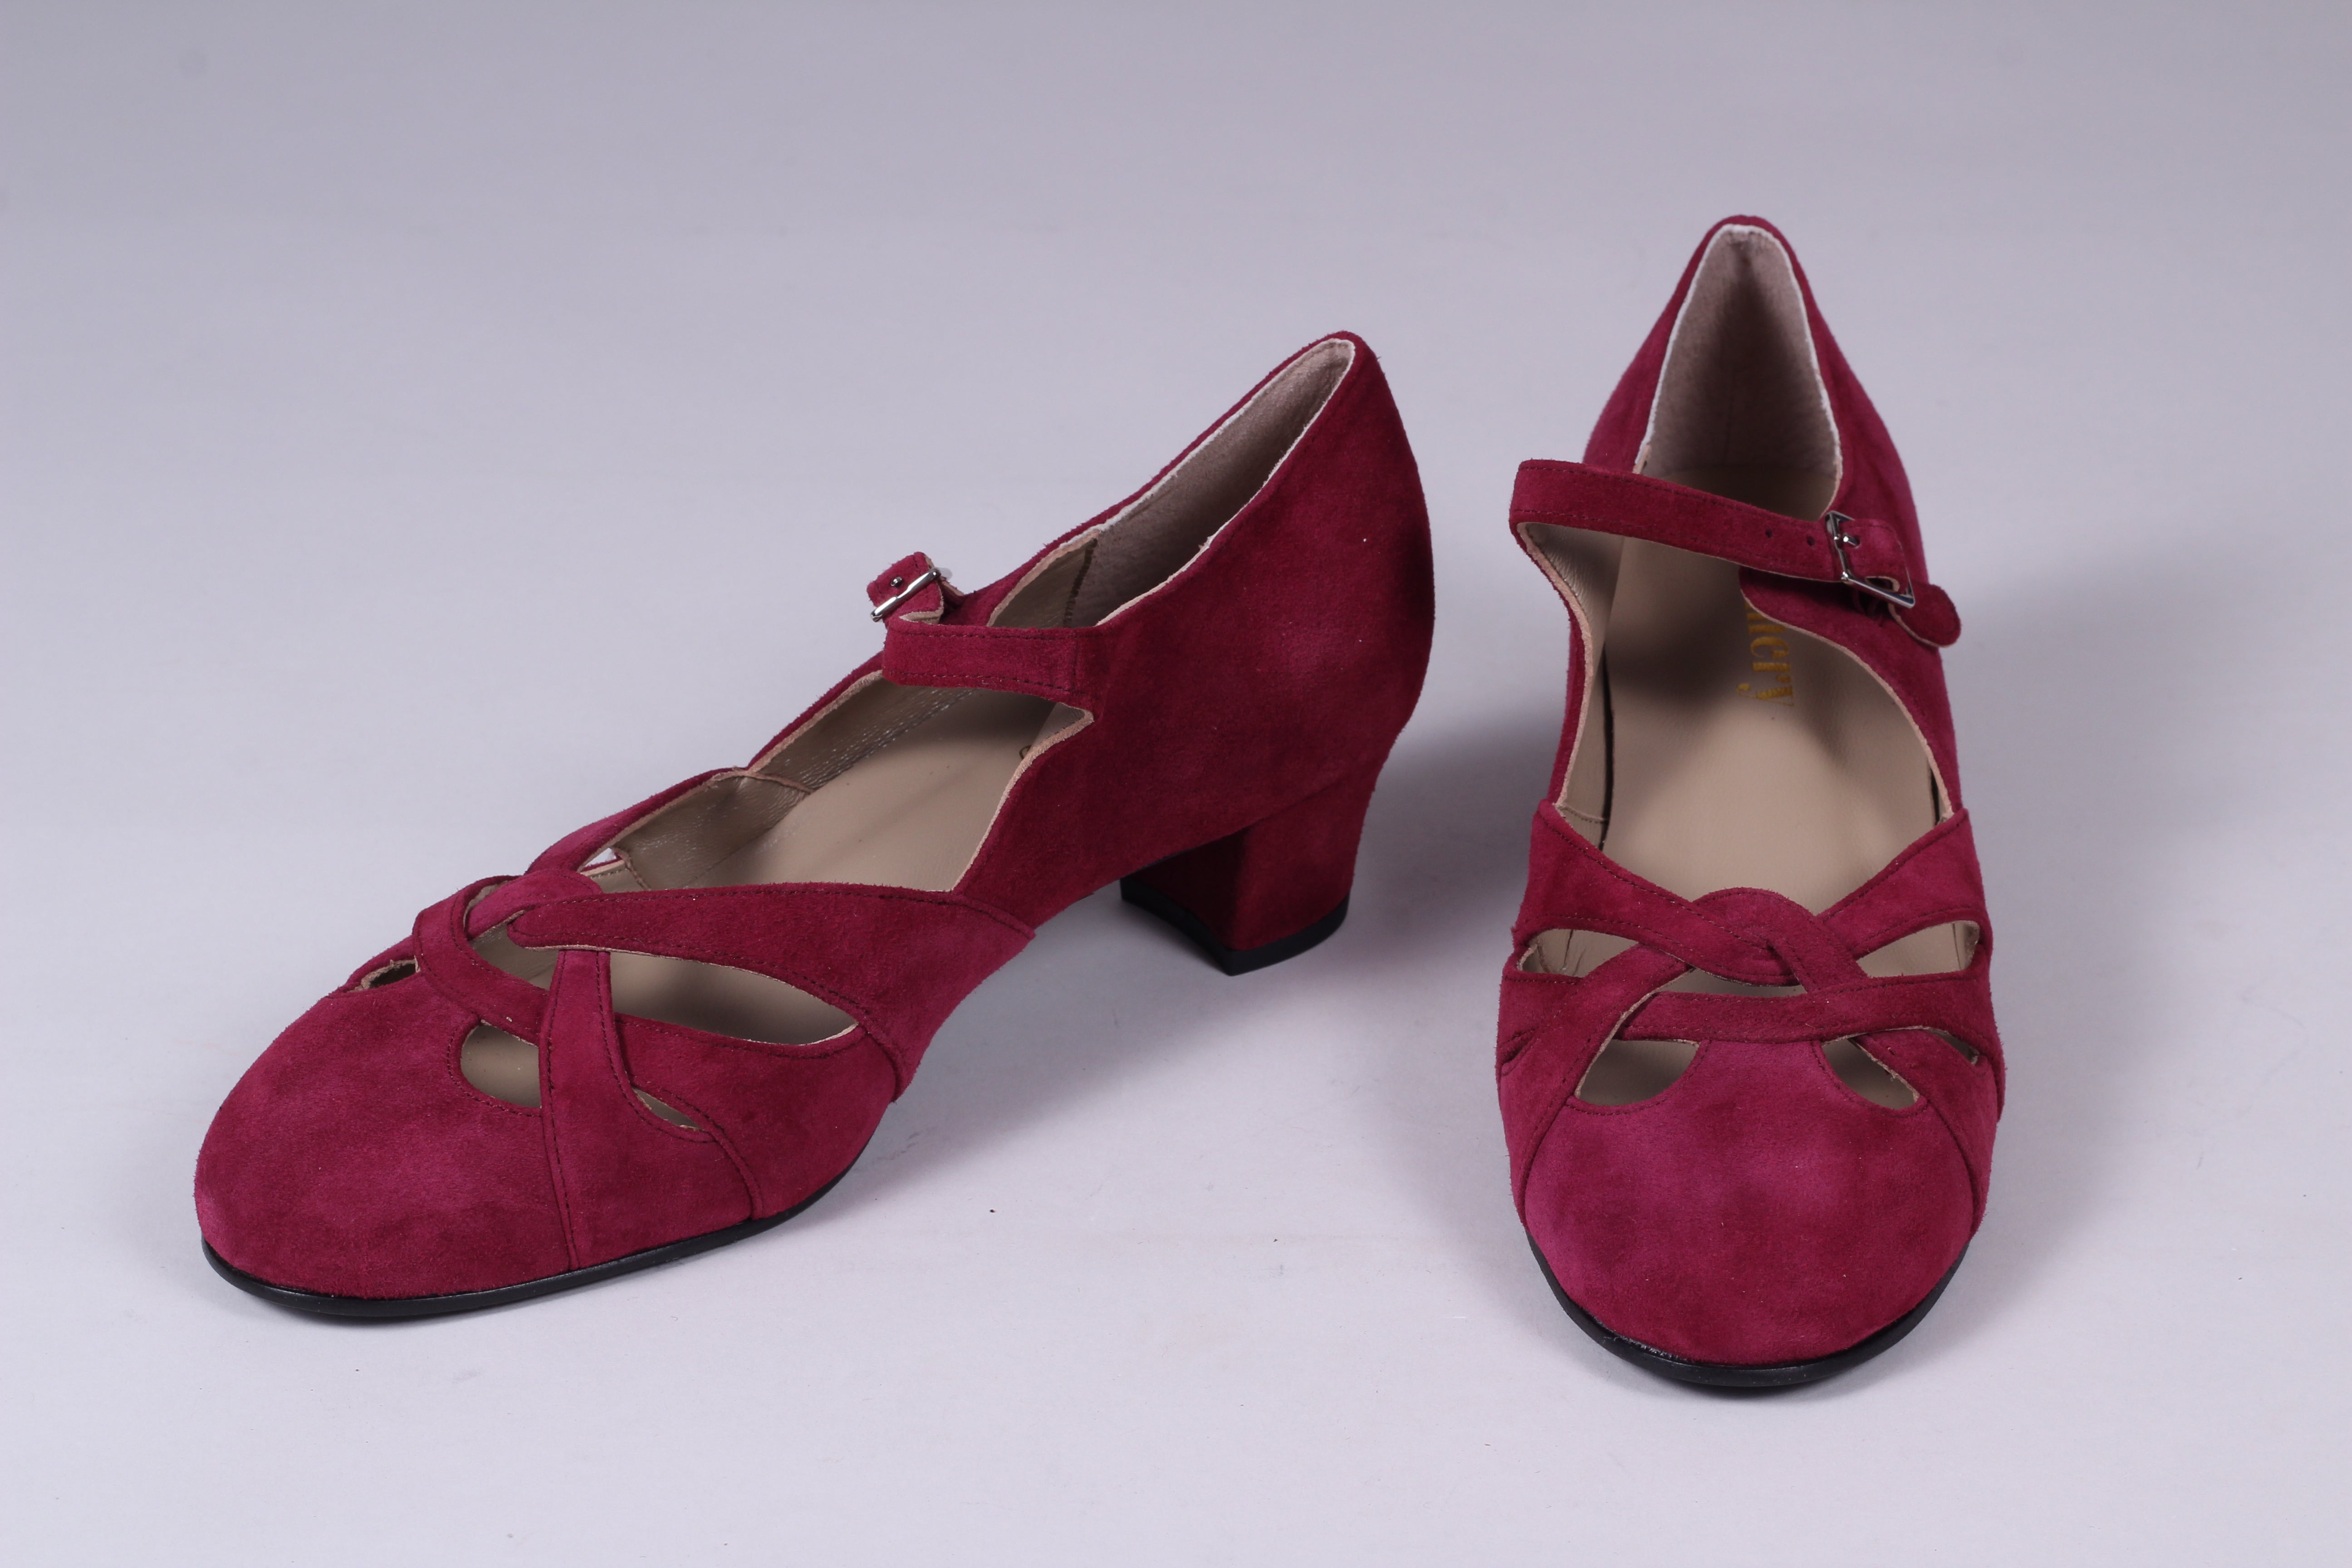 1930'er / 1940'er vintage style sandaler i ruskind - bordeaux rød  - Ida